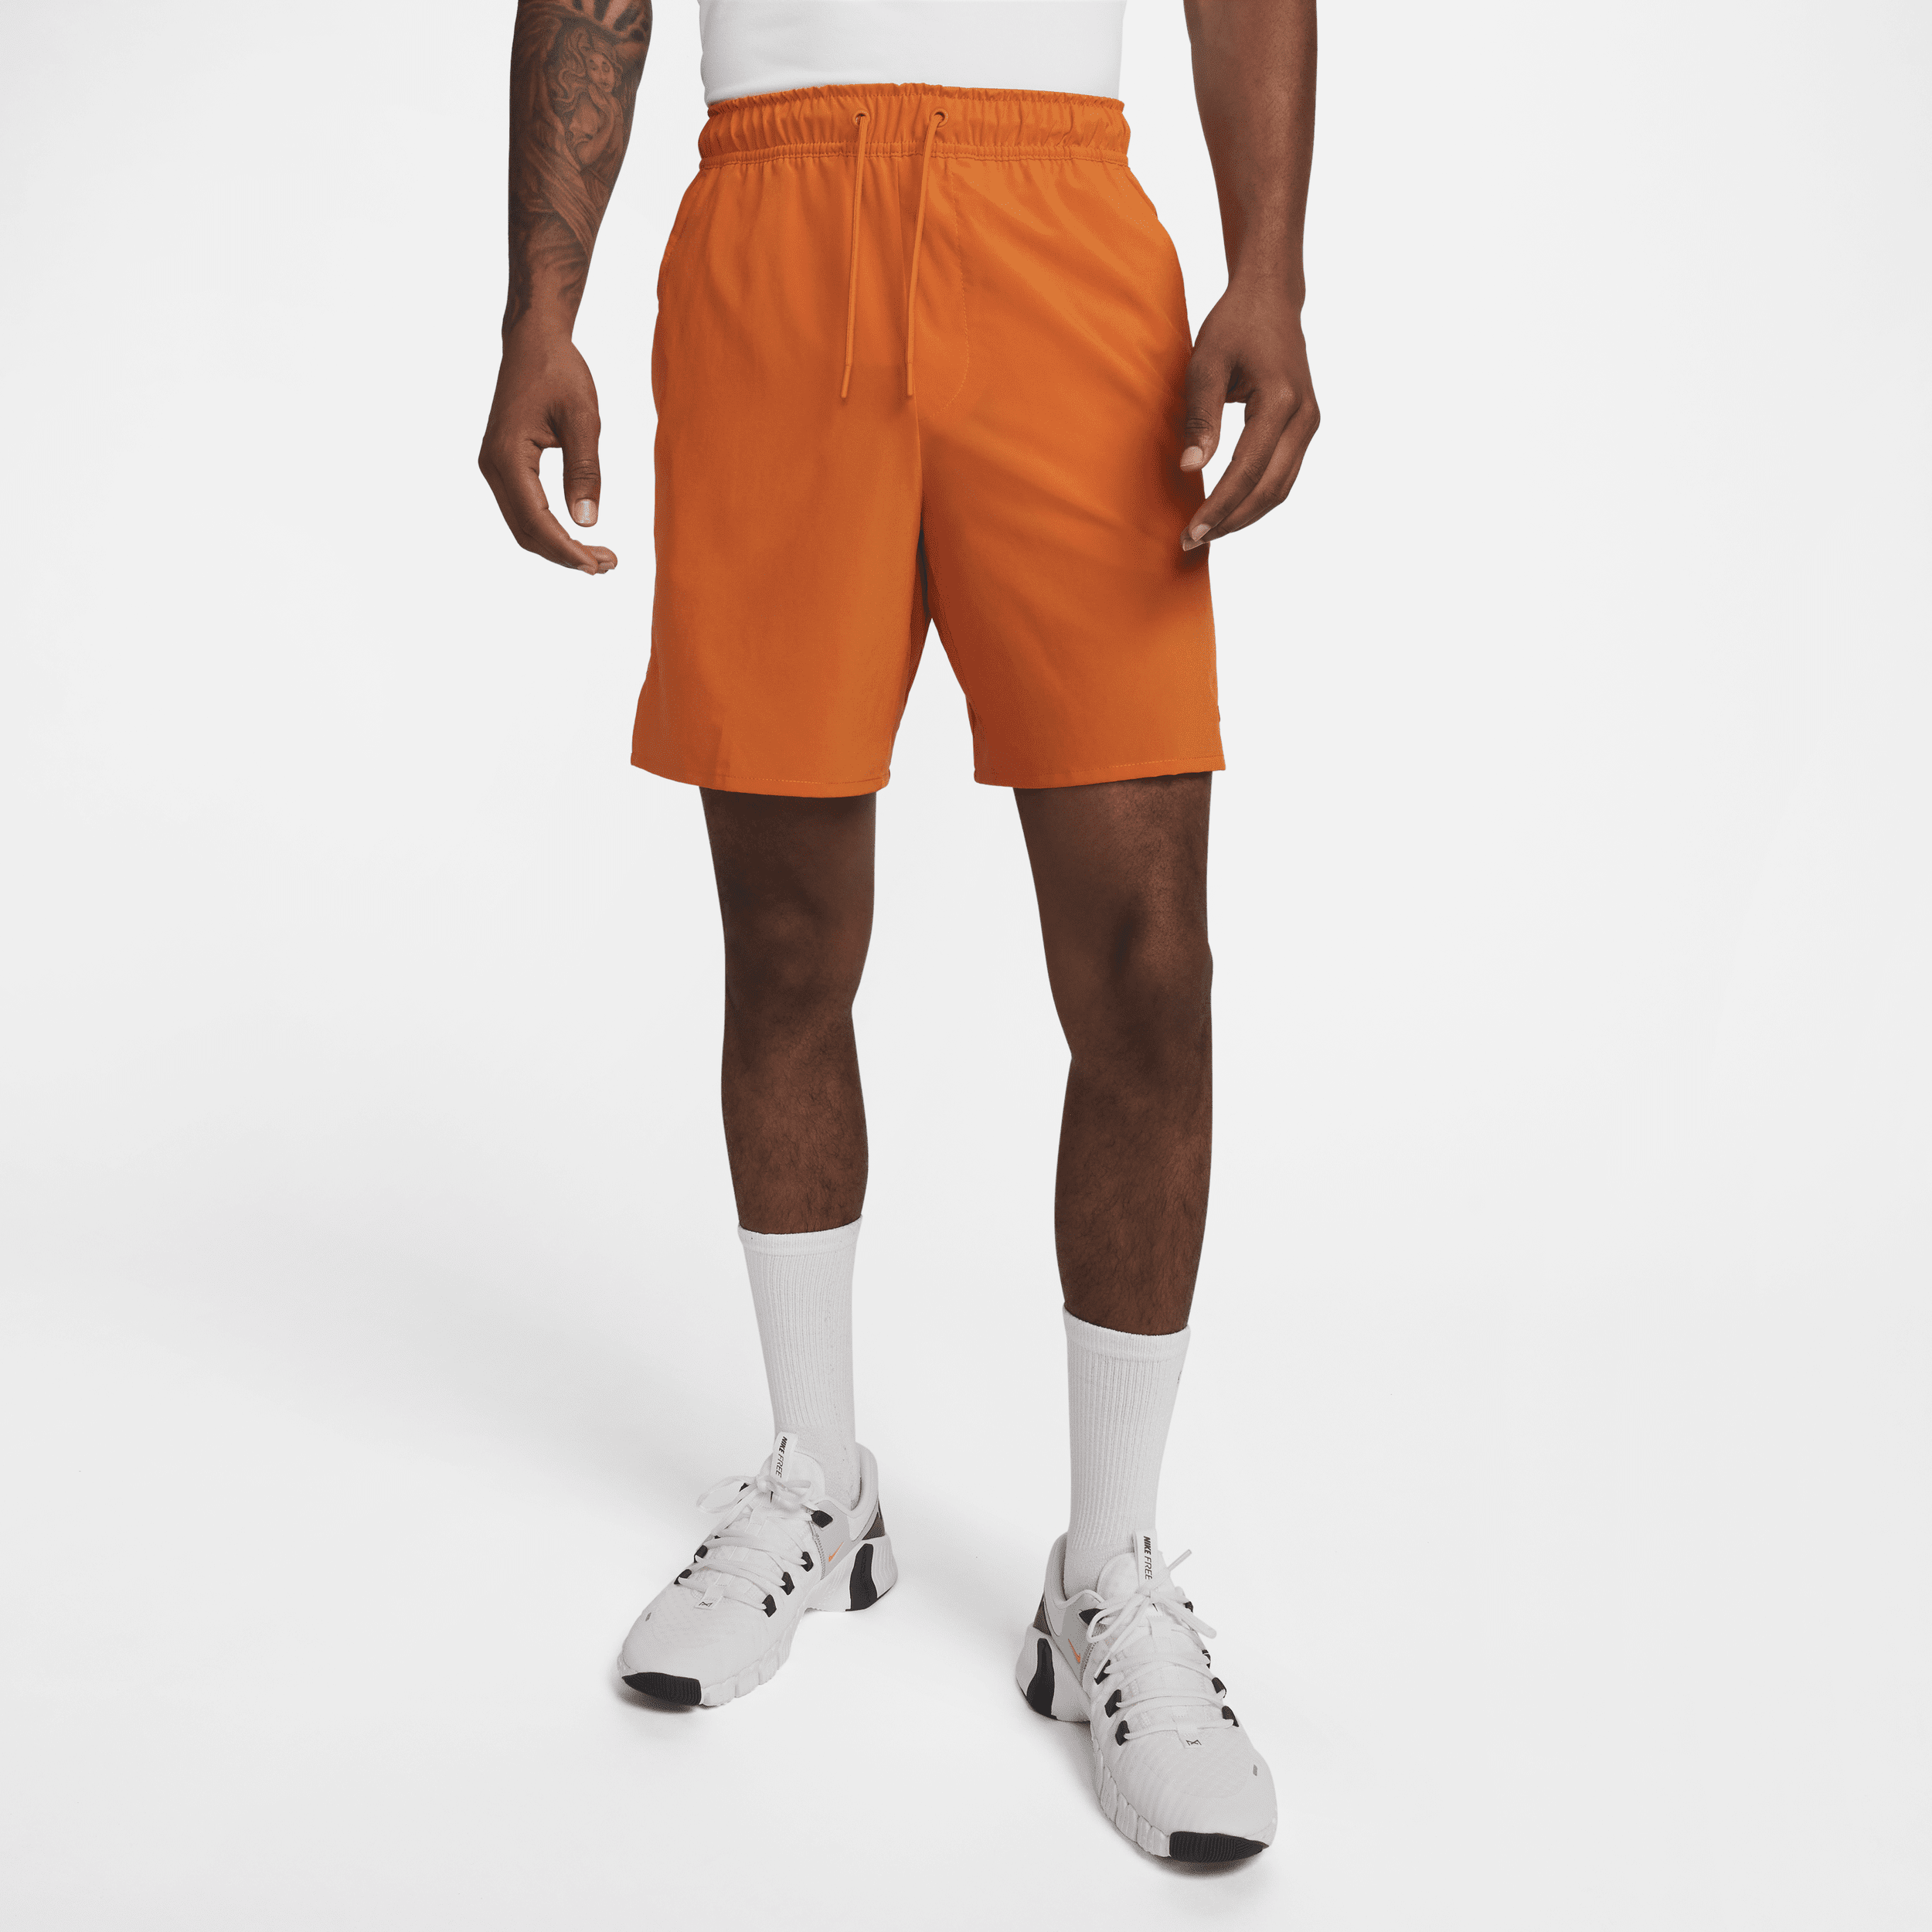 Shorts versatili Dri-FIT non foderati 18 cm Nike Unlimited – Uomo - Arancione